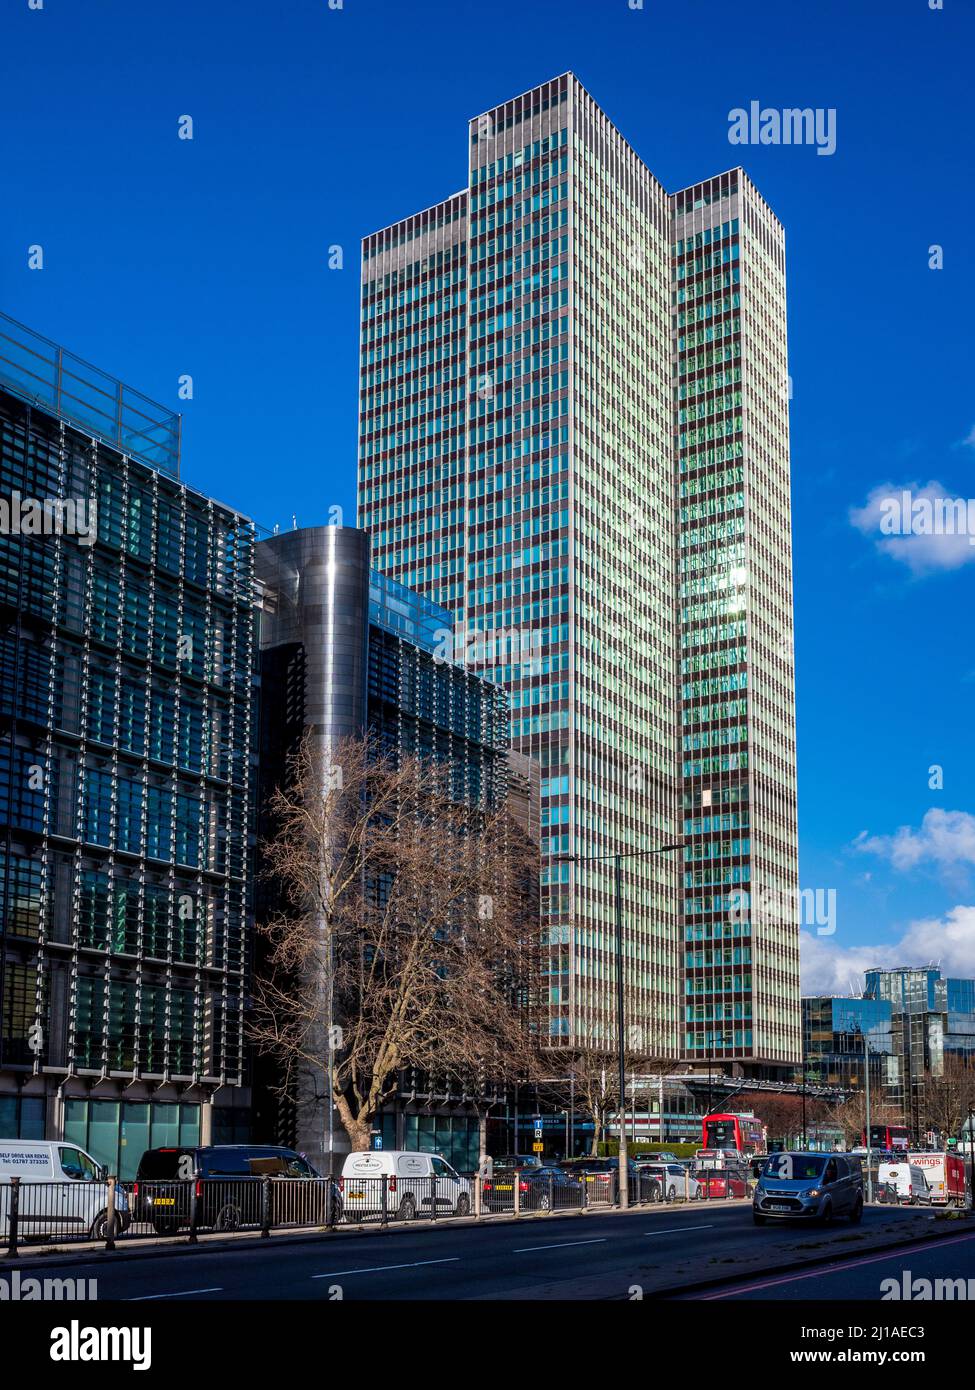 Euston Tower London - immeuble de 36 étages de style international situé sur Euston Road dans le centre de Londres. Architectes Sidney Kaye Eric Firmin & Partners 1970. Banque D'Images